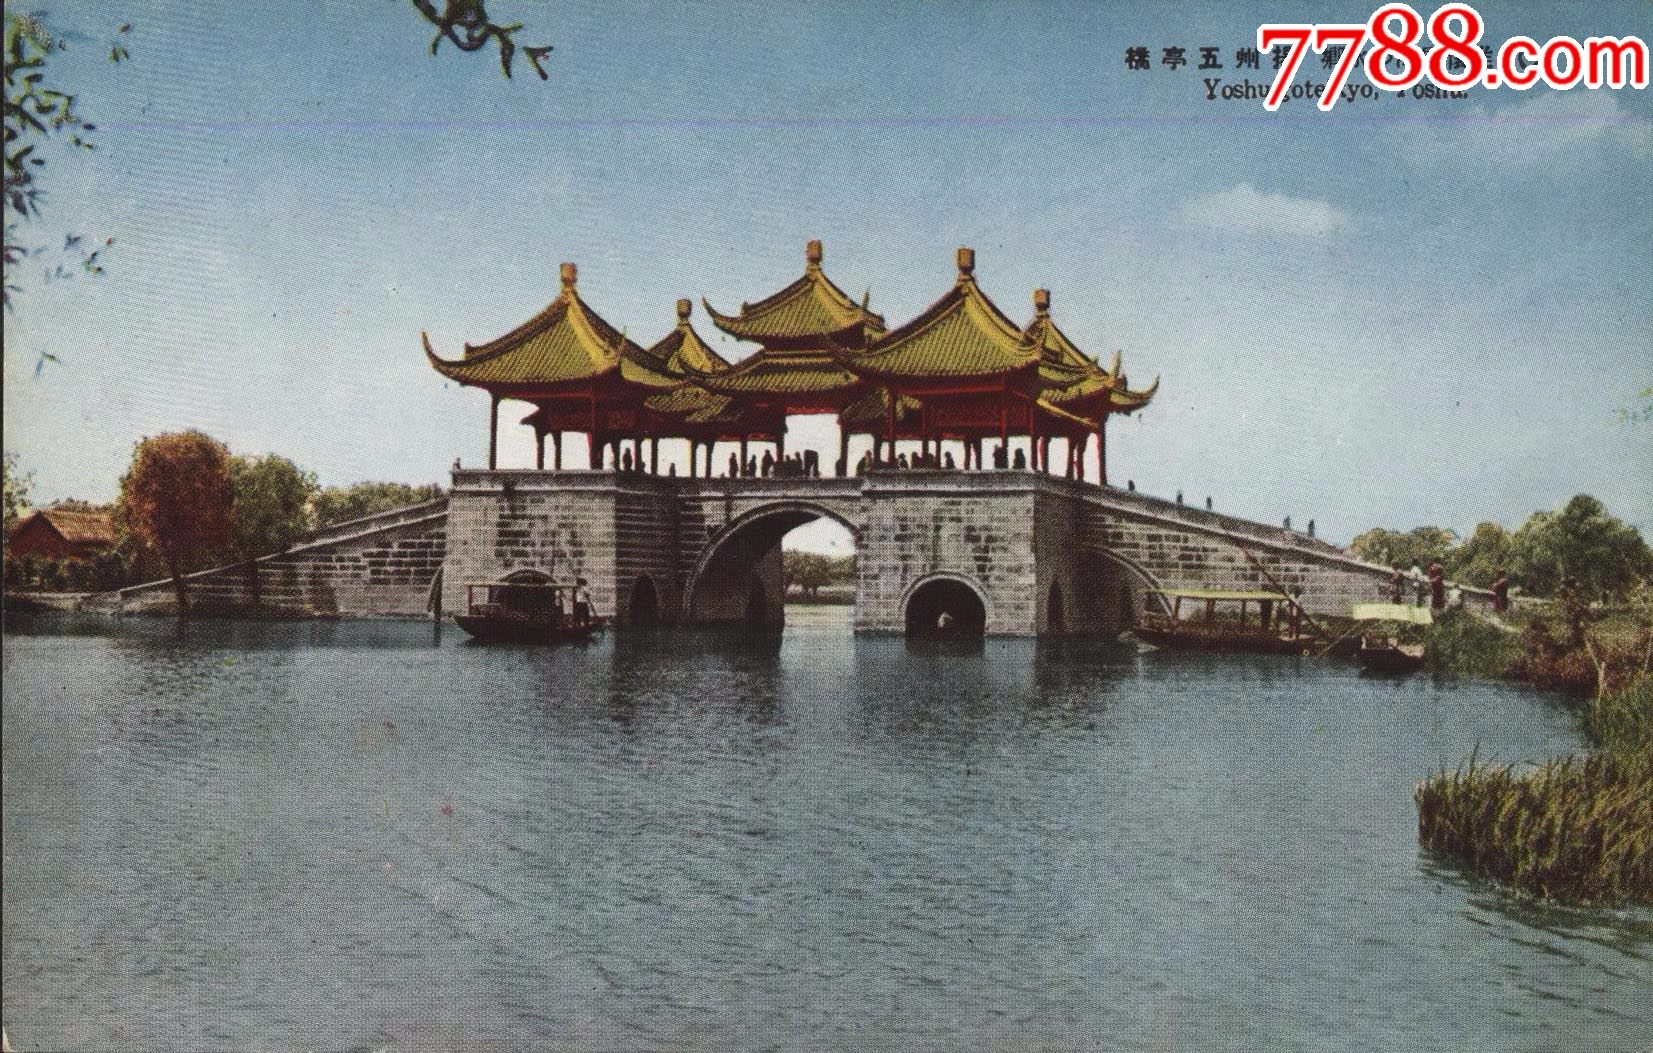 侵华史料日本军邮摄影版长江之主要都市扬子江行扬州五亭桥